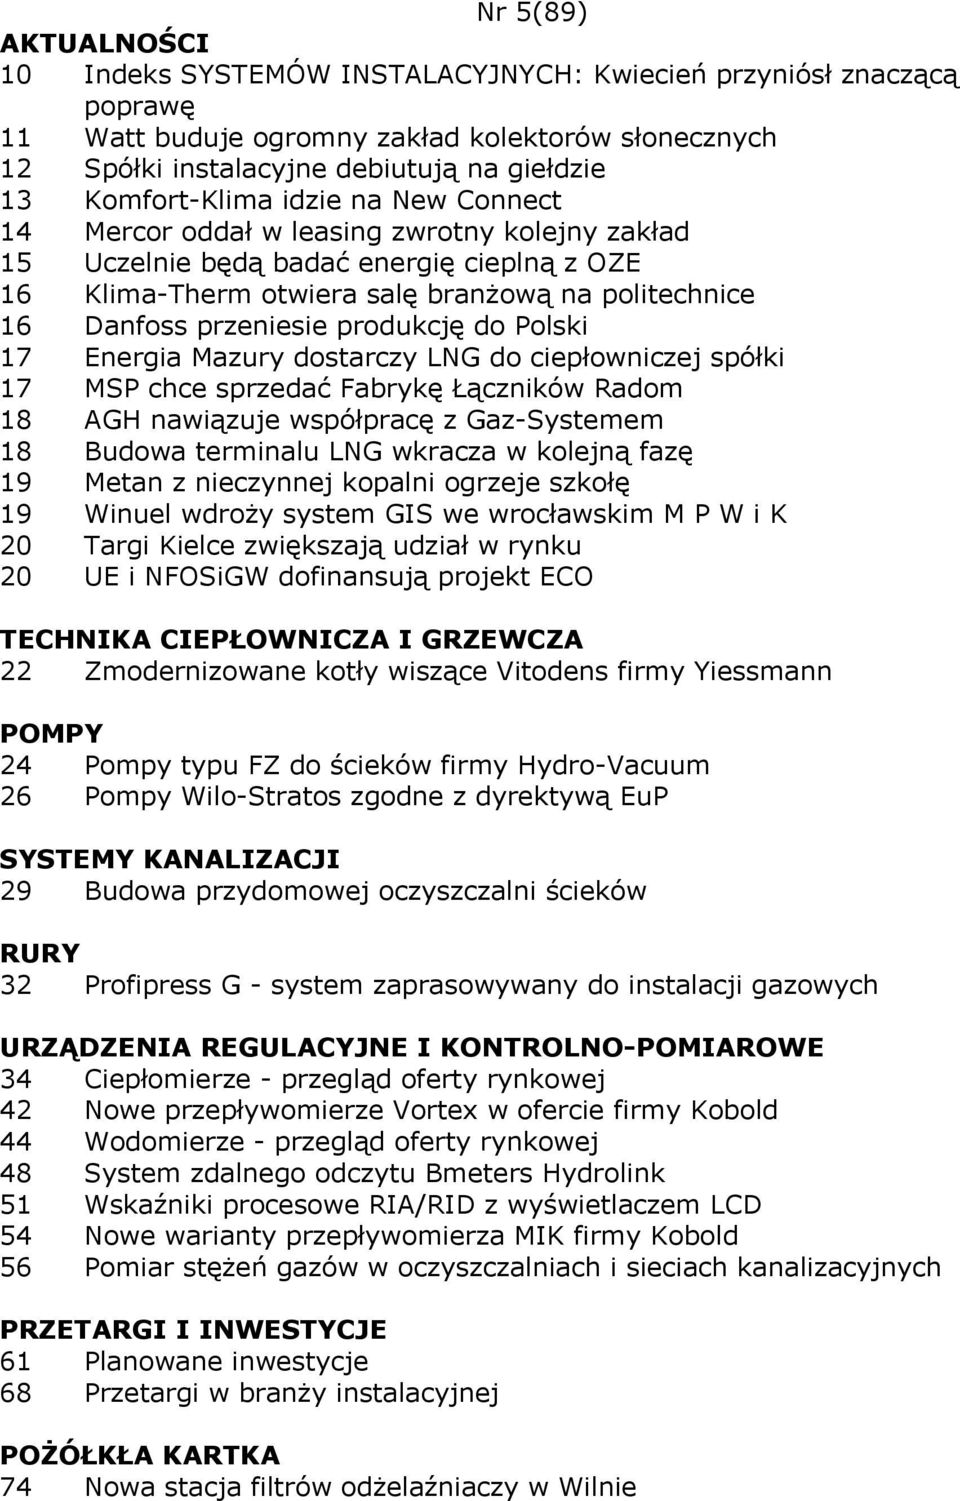 do Polski 17 Energia Mazury dostarczy LNG do ciepłowniczej spółki 17 MSP chce sprzedać Fabrykę Łączników Radom 18 AGH nawiązuje współpracę z Gaz-Systemem 18 Budowa terminalu LNG wkracza w kolejną